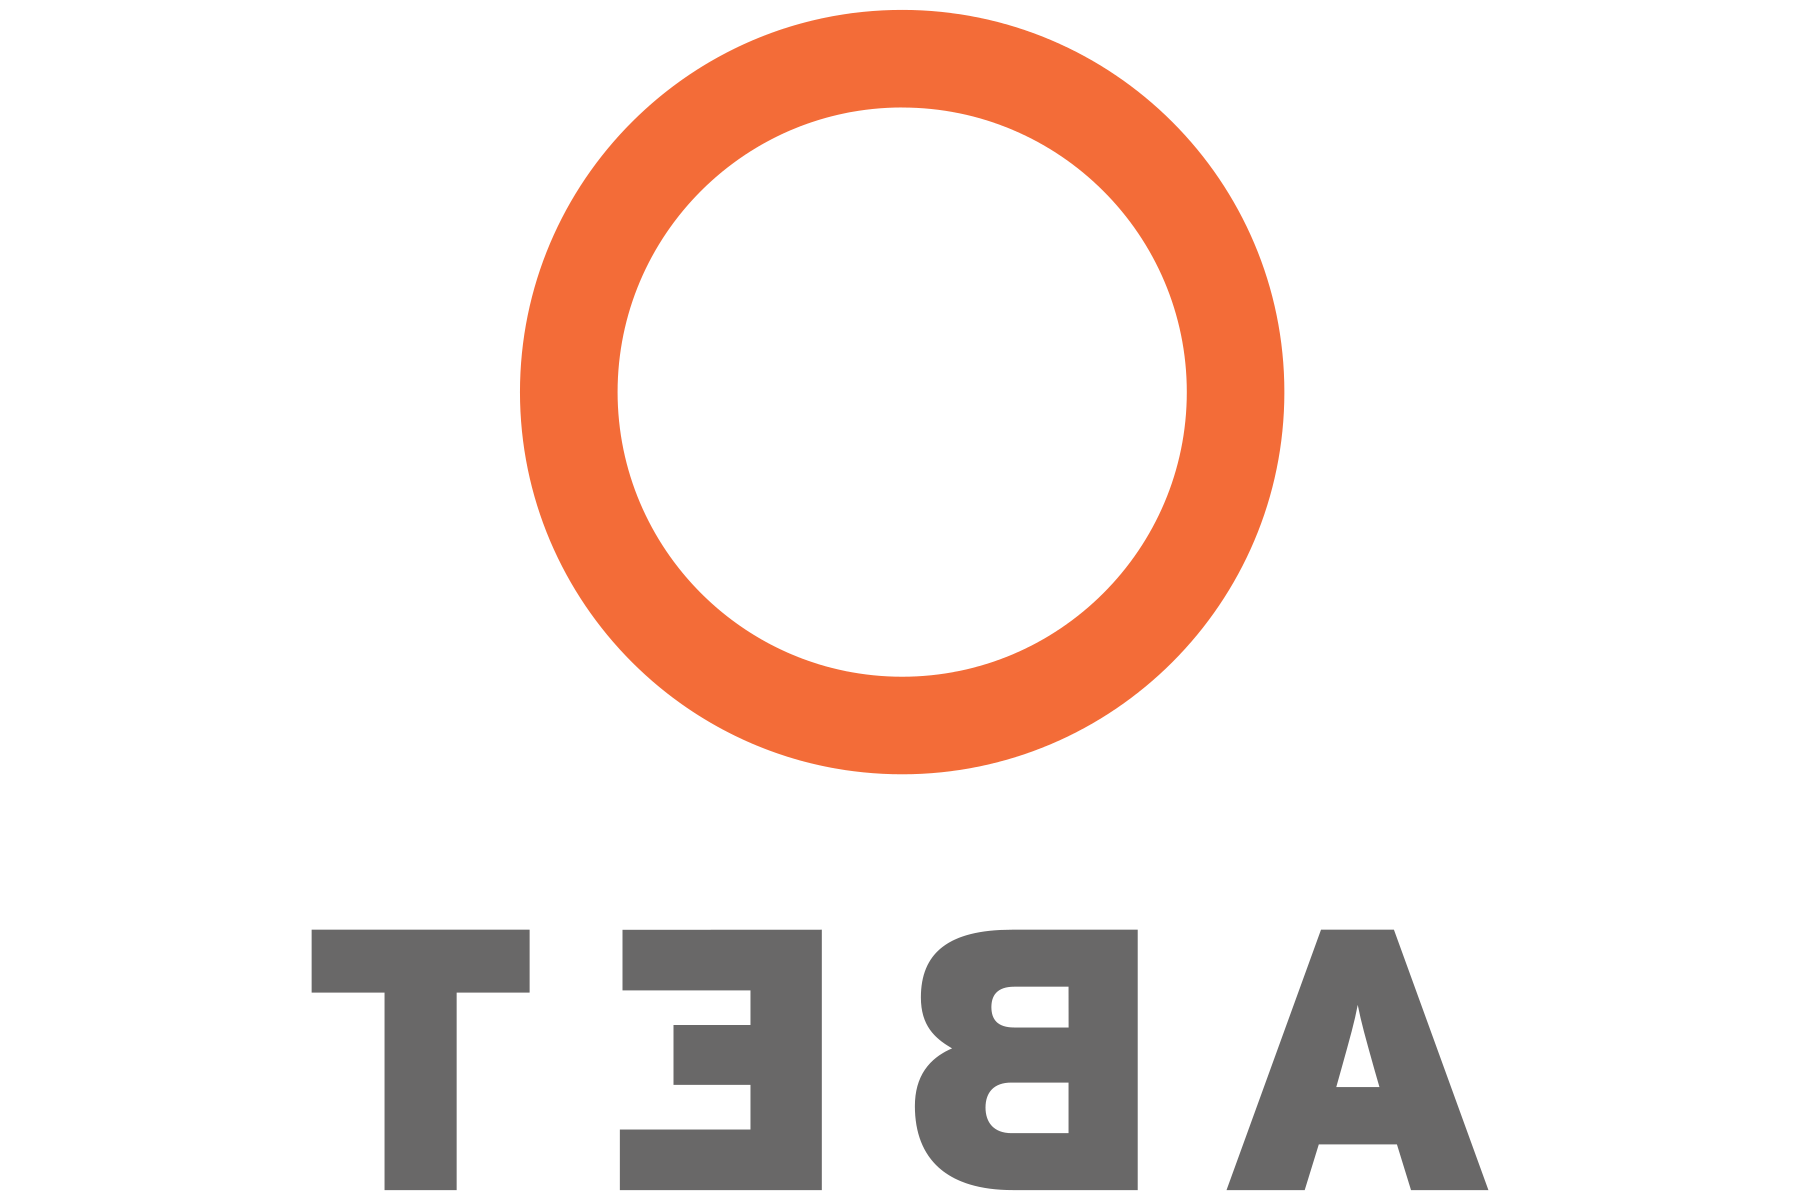 ABET标志与橙色圆圈和灰色文字下面.